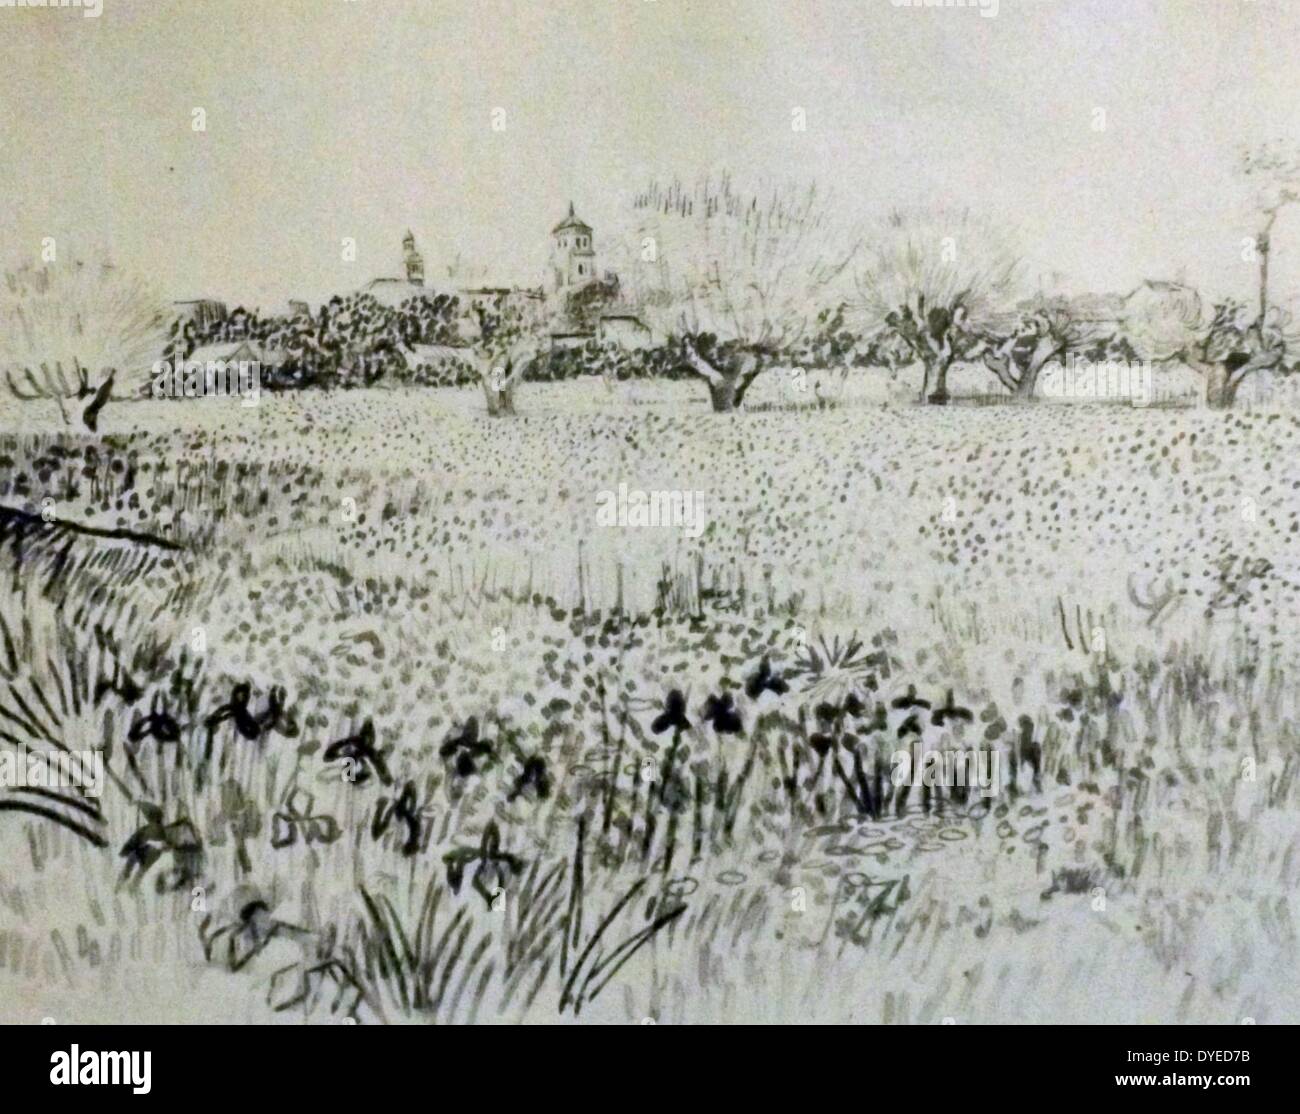 Skizze mit dem Titel die Ansicht von Arles. Eine Landschaft, die Szene von Vincent Van Gogh (1853 - 1890) post-impressionistischen Maler niederländischer Herkunft. Vom 1873 Stockfoto